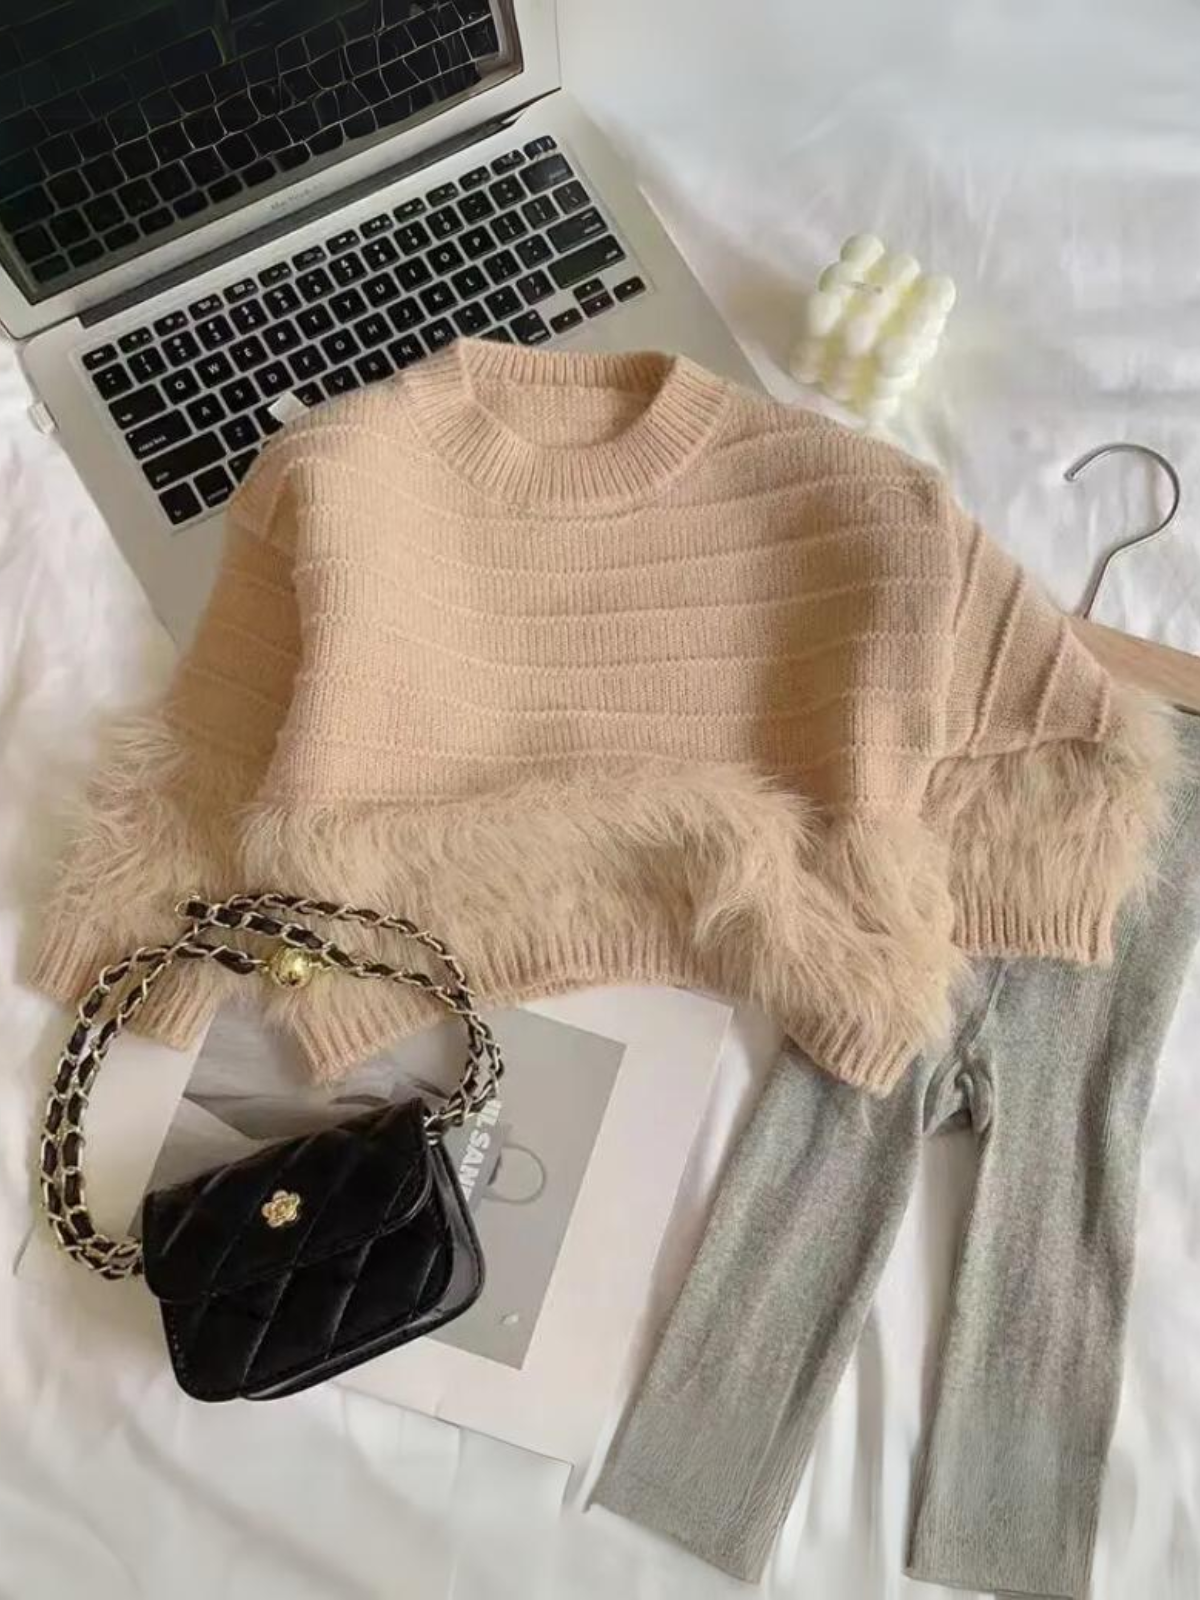 Mia Belle Girls Furry Knit Sweater | Girls Winter Tops